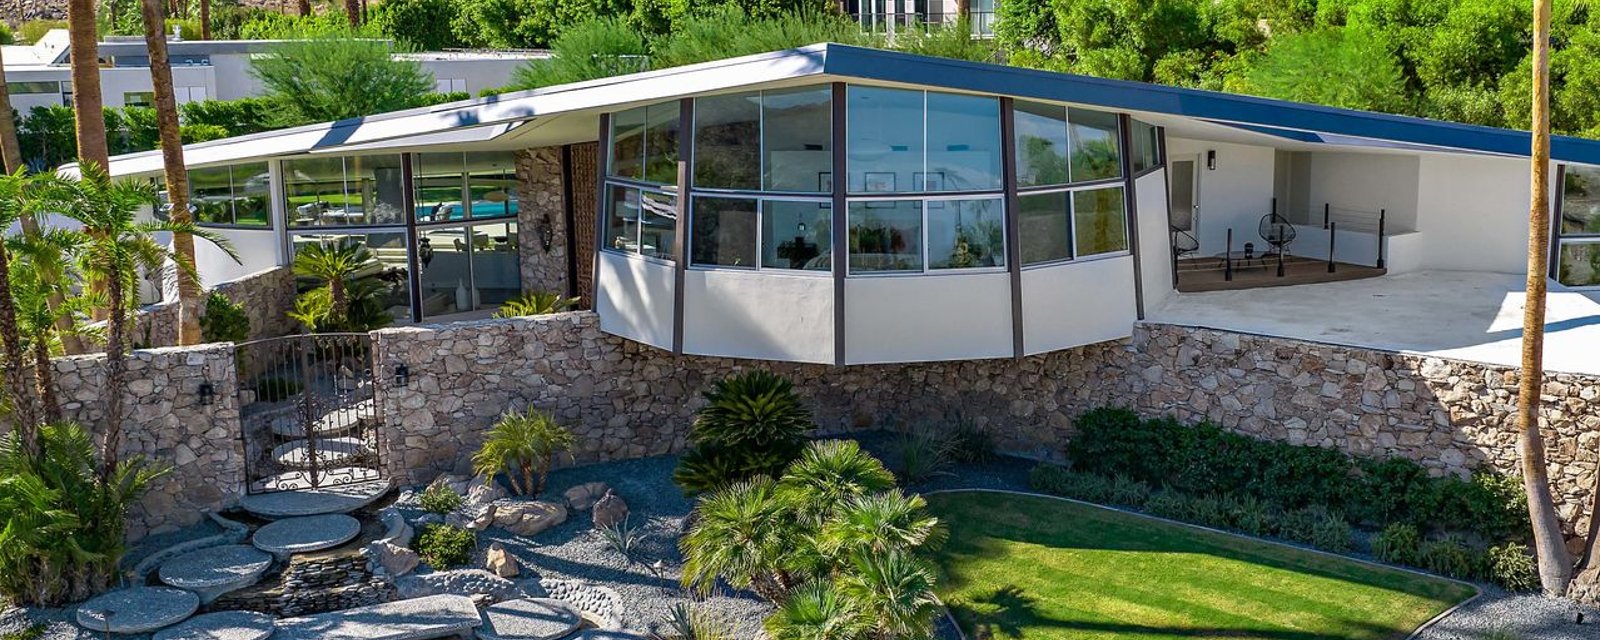 La fameuse demeure de Palm Springs où Elvis et Priscilla ont passé leur lune de miel est à vendre